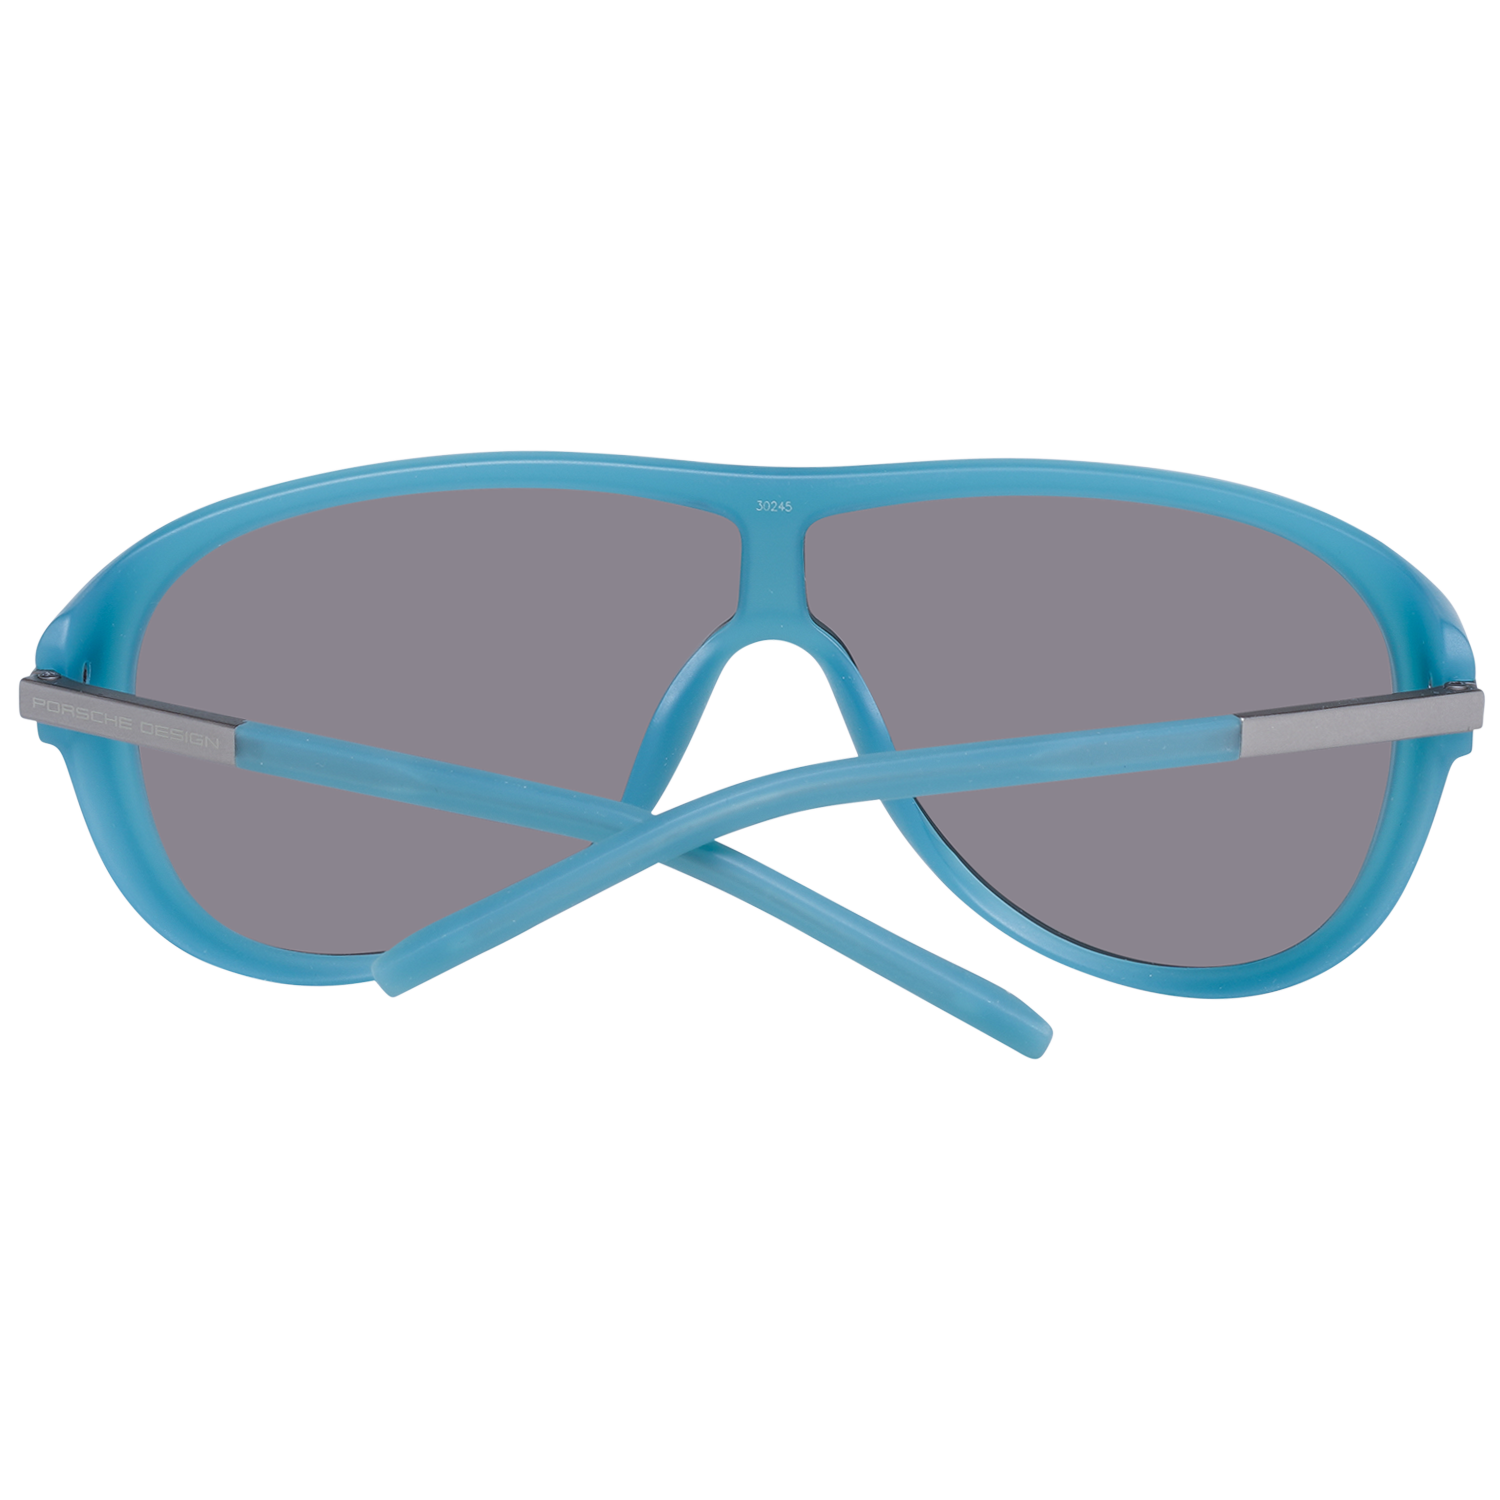 Porsche Design Sunglasses Porsche Design Sunglasses P8598 B 69 Eyeglasses Eyewear UK USA Australia 